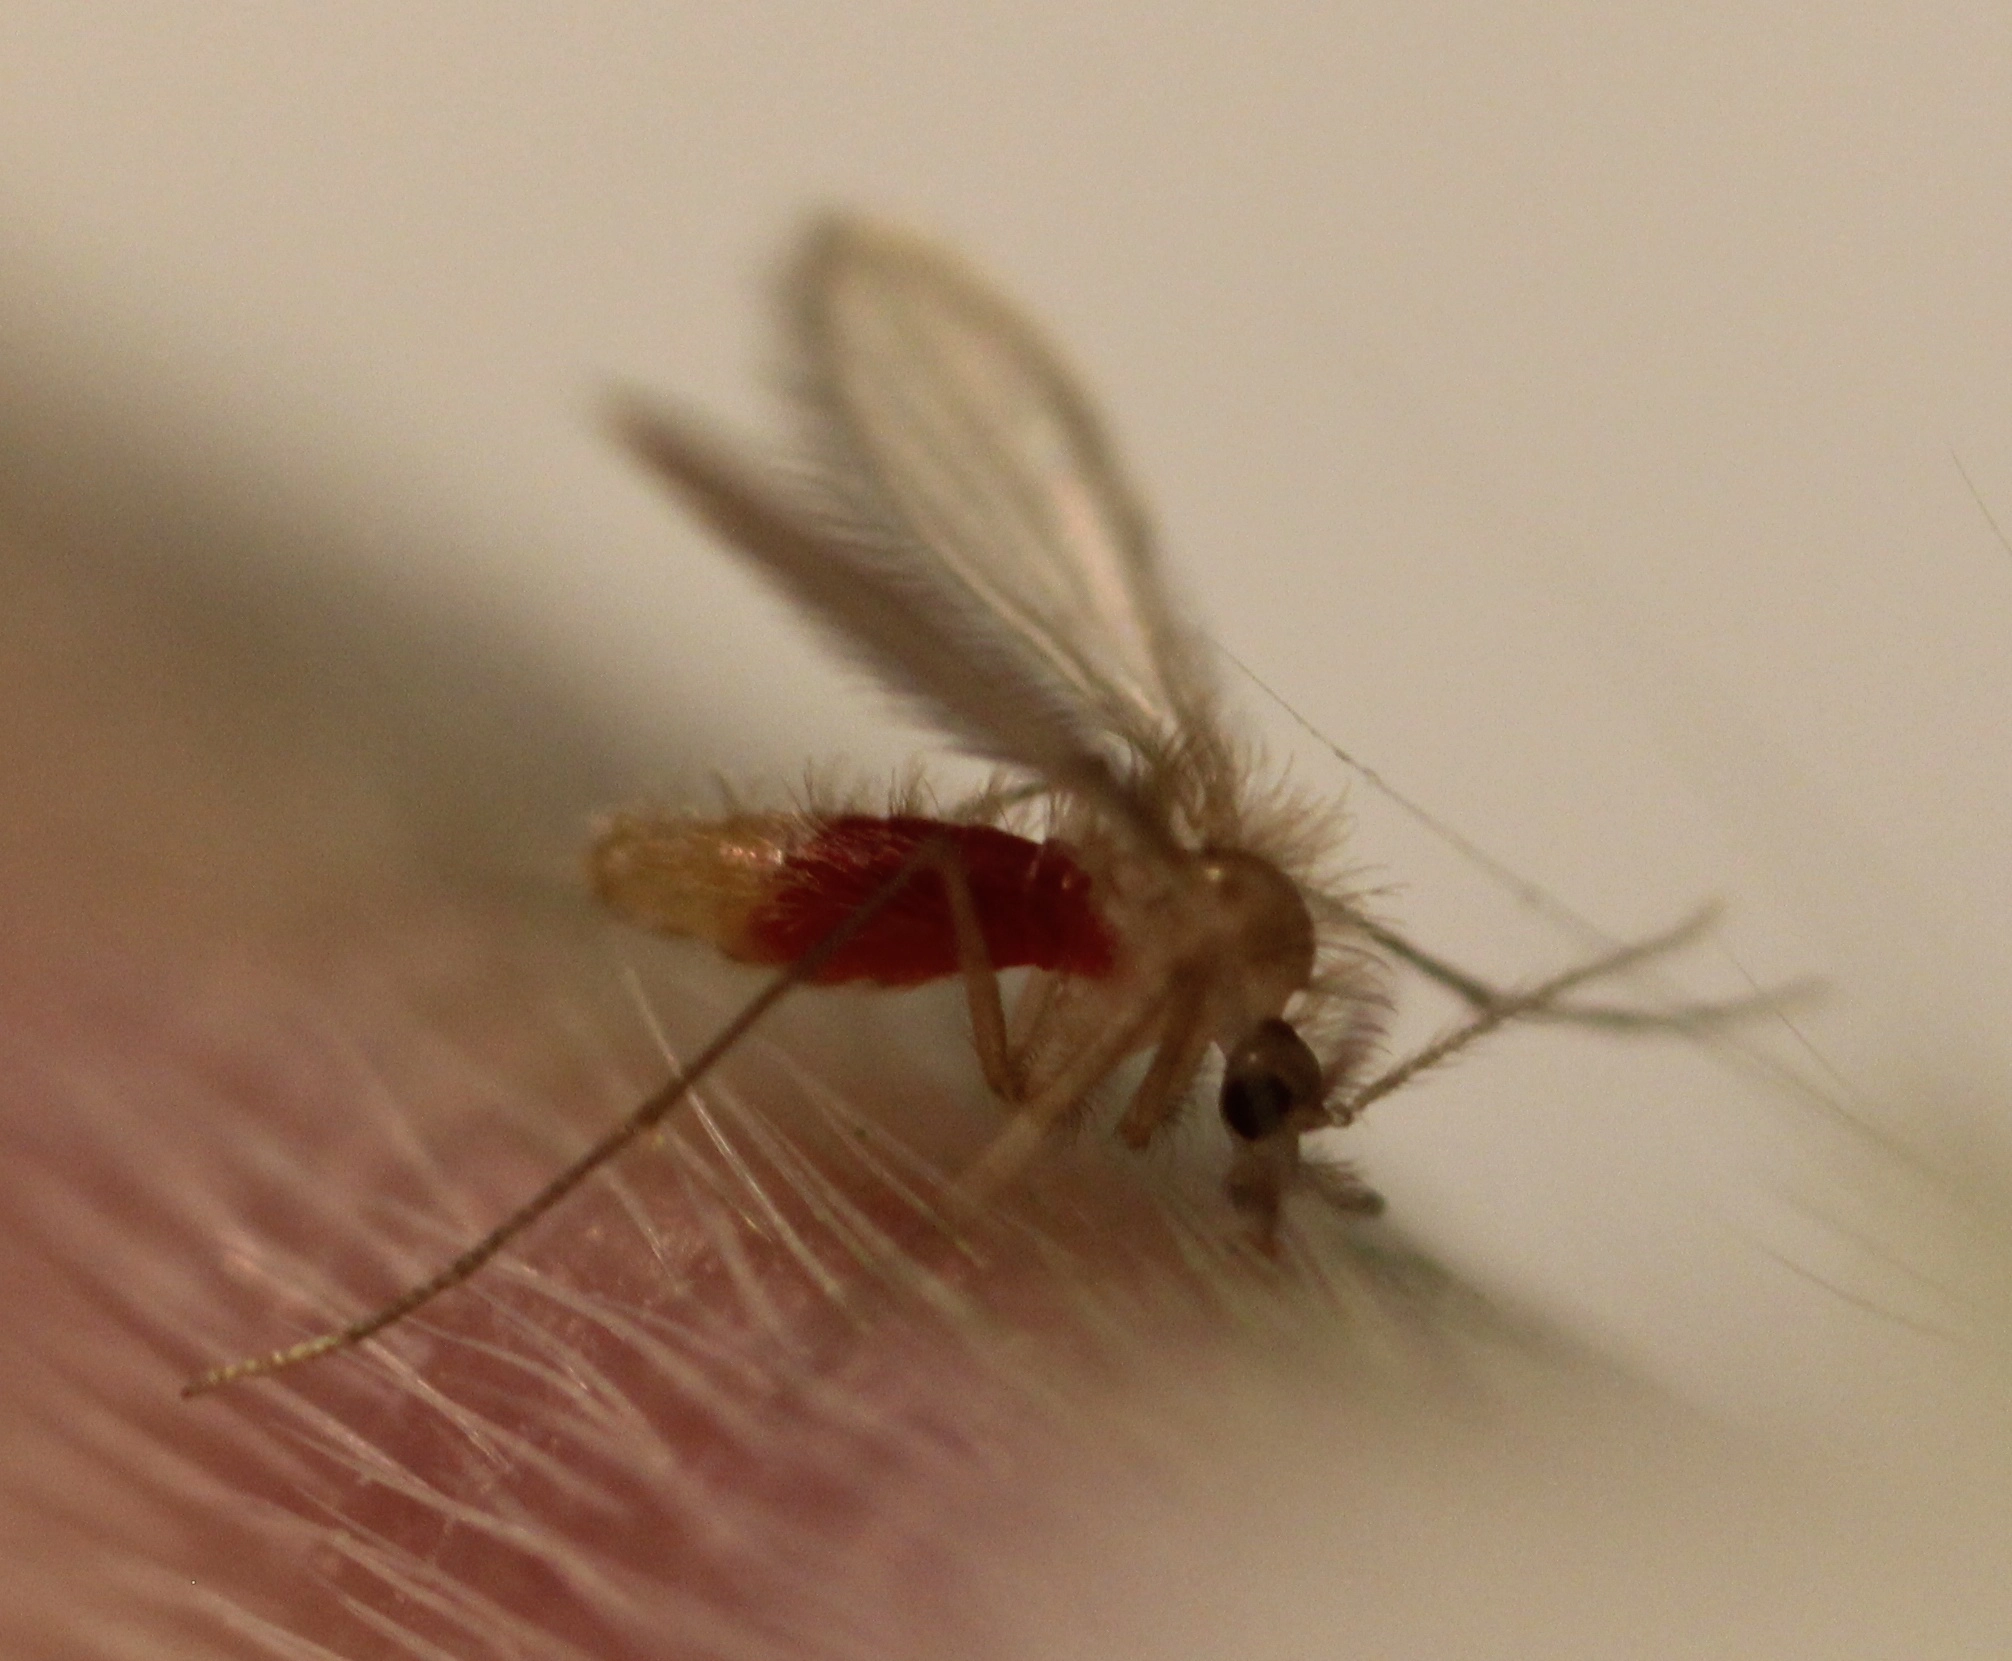 P. papatasi_sand fly causing leishmaniasis WebP